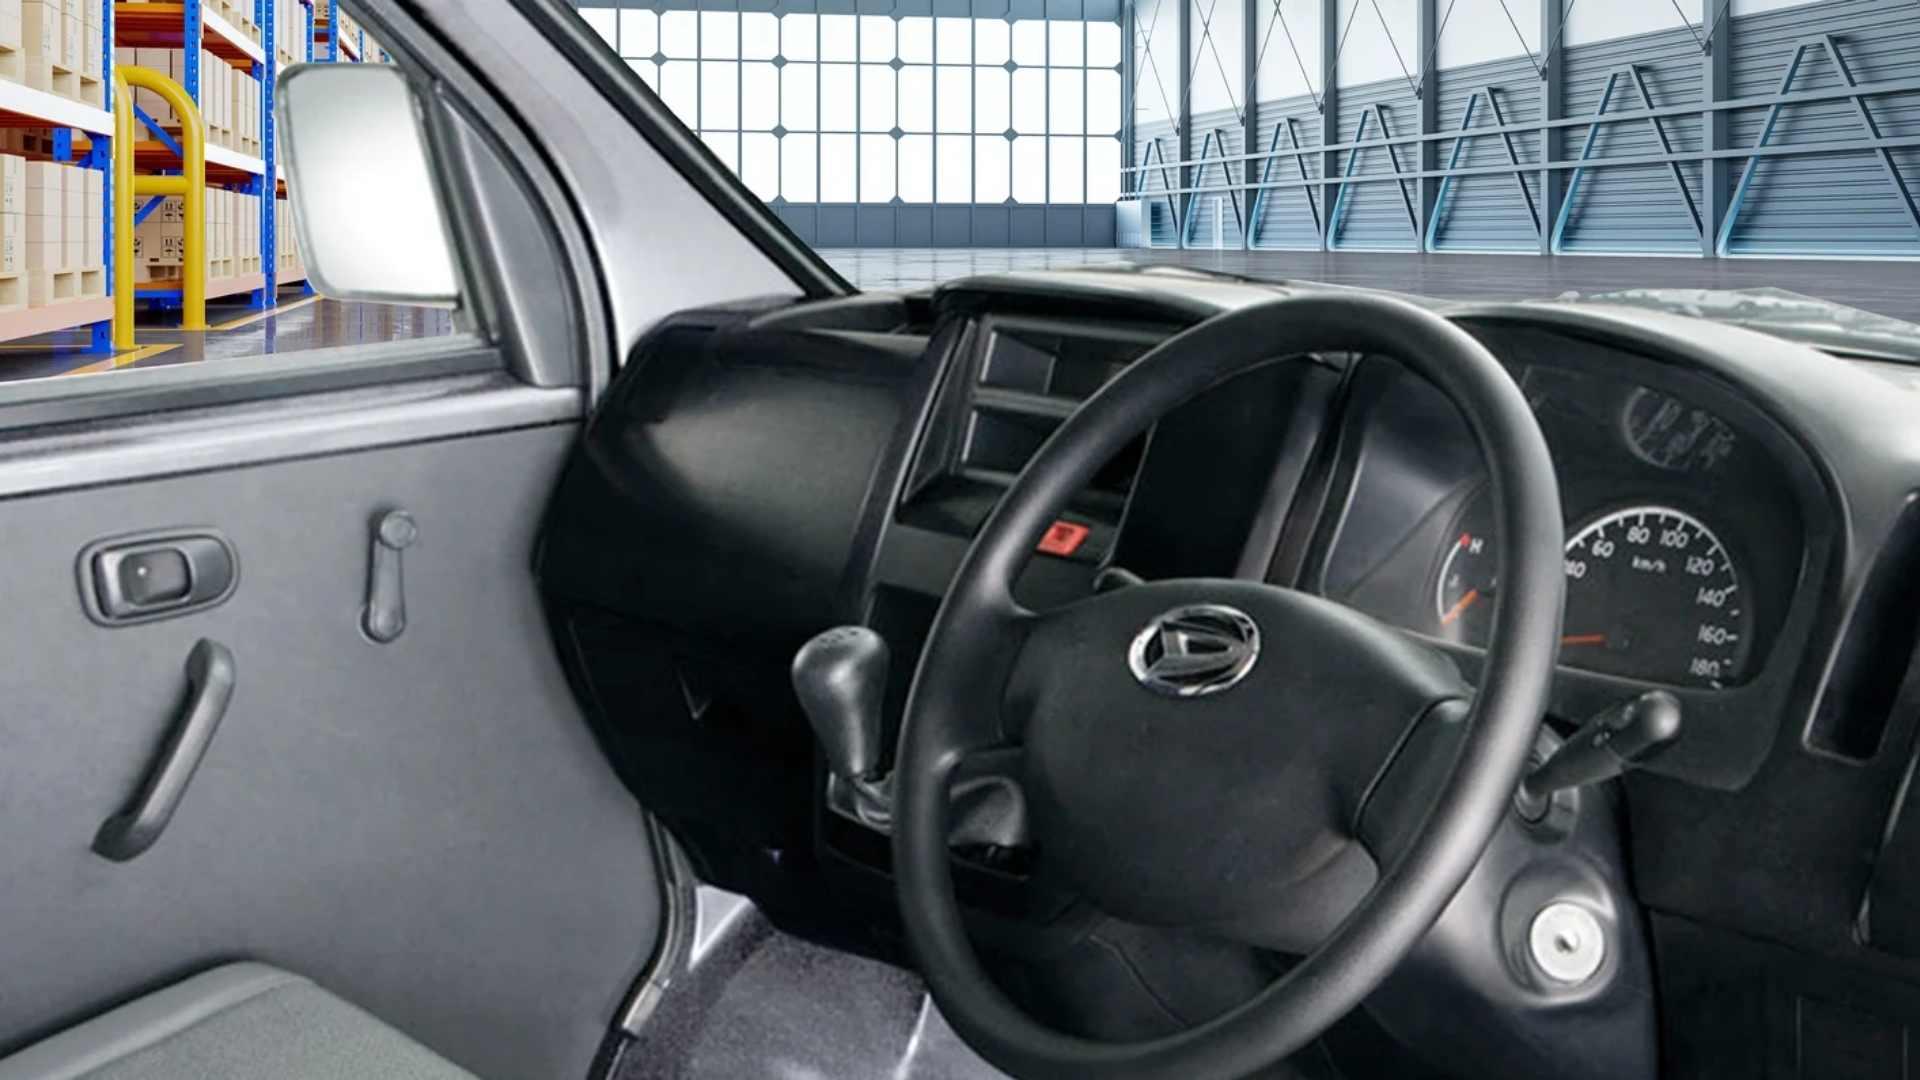 TRAC - MVP Car - Granmax Minibus Interior 02.jpg